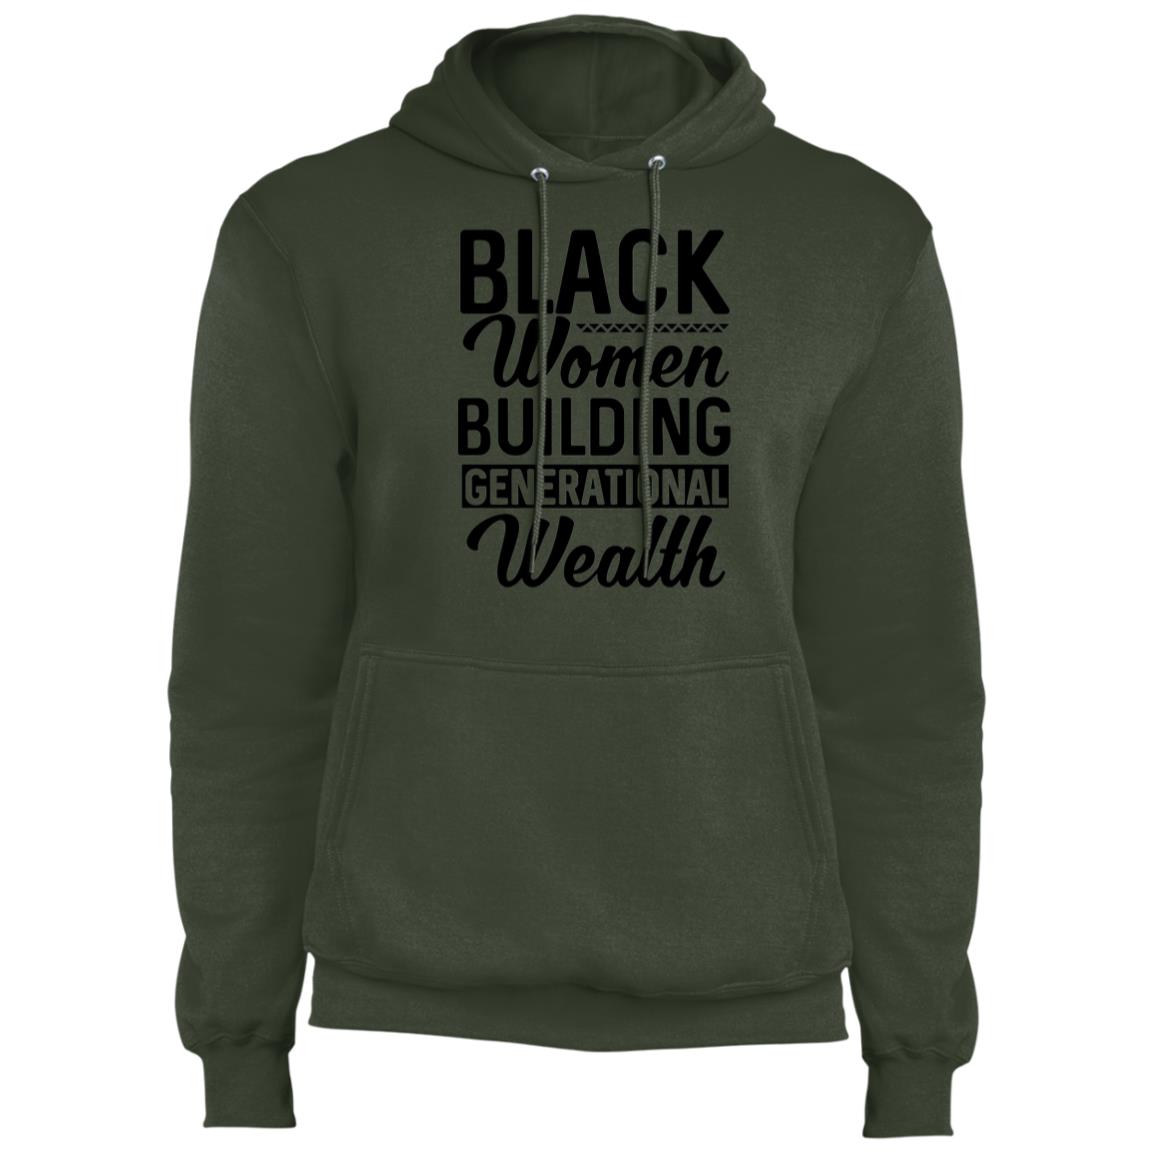 Black Women Building Generational Wealth - Fleece Pullover Hoodie